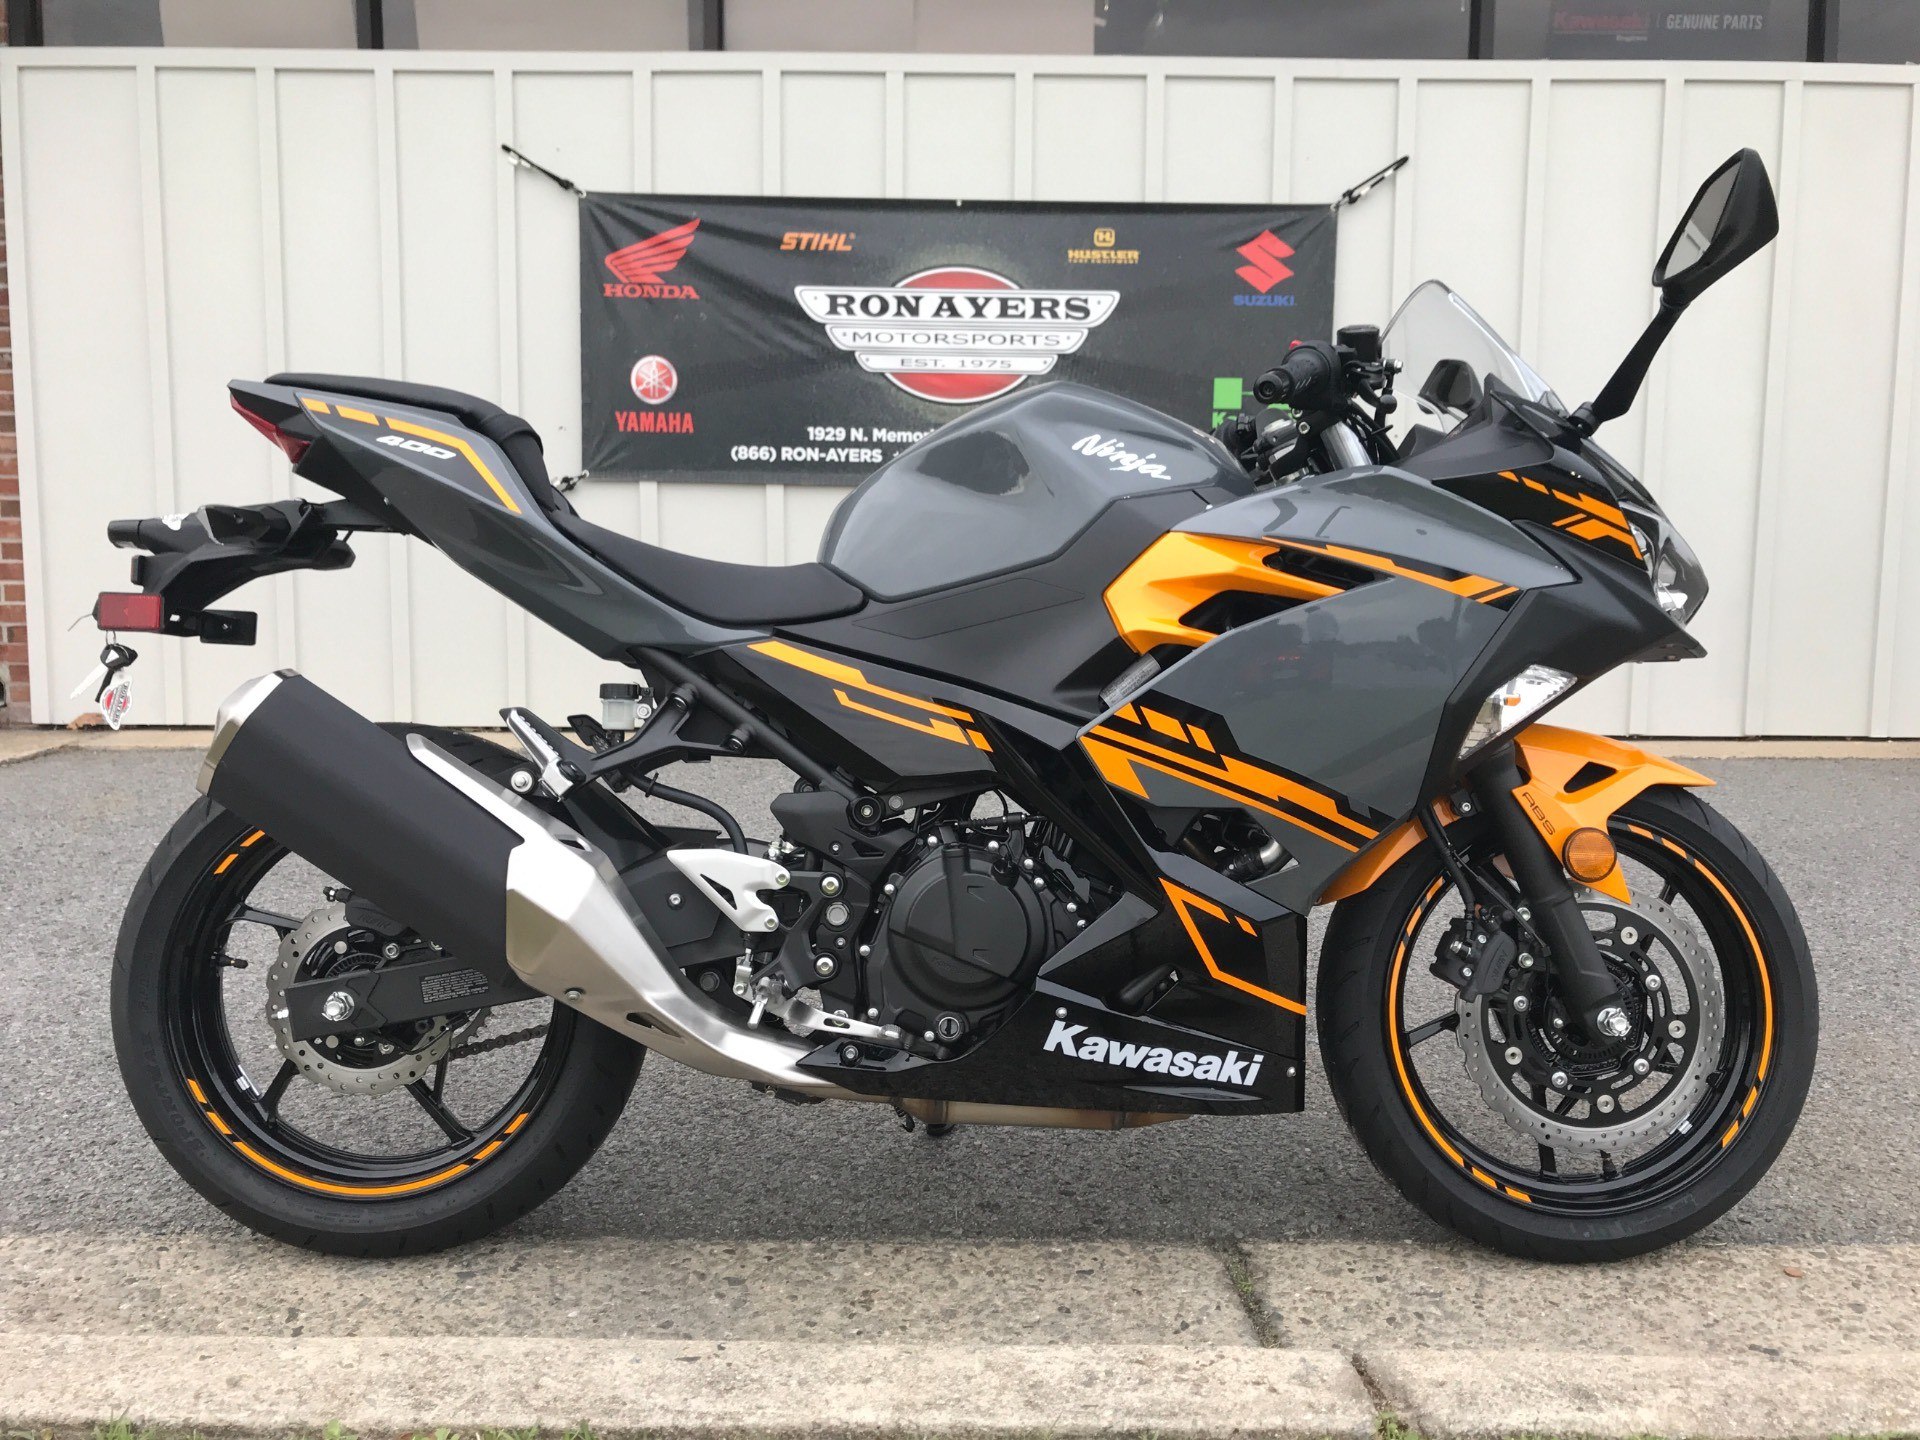 New 2019 Kawasaki Ninja 400  ABS Motorcycles in Greenville 